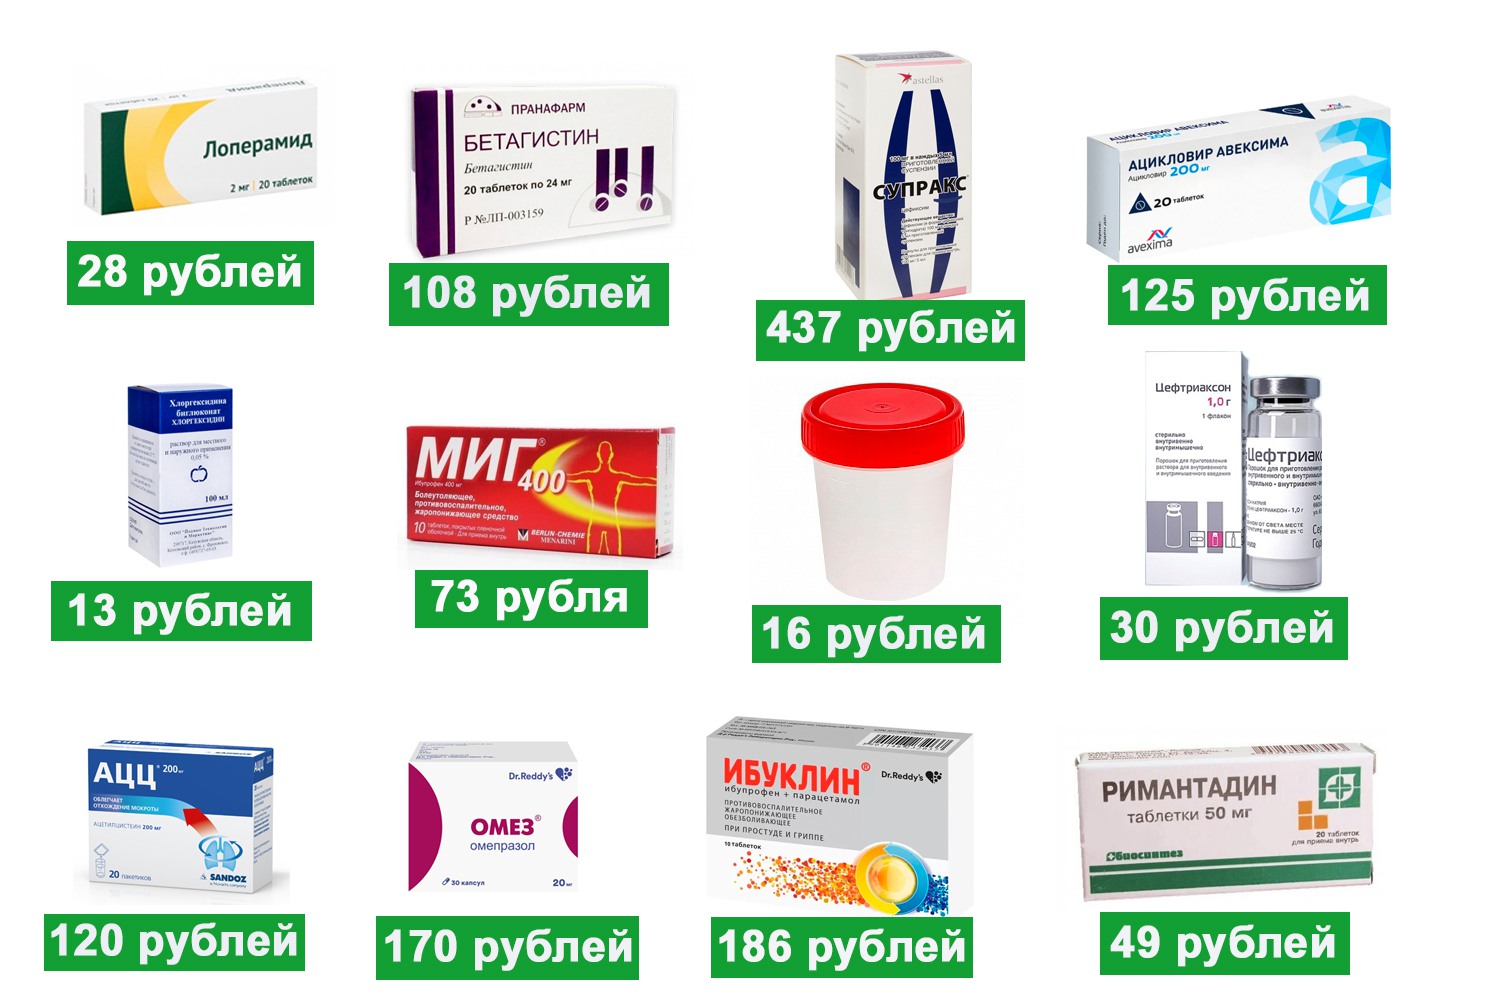 Сайт аптек сравнить цены. Аптека лекарства. Цены на лекарства. Лекарства в аптеках Москвы. Каталог лекарств в аптеках.